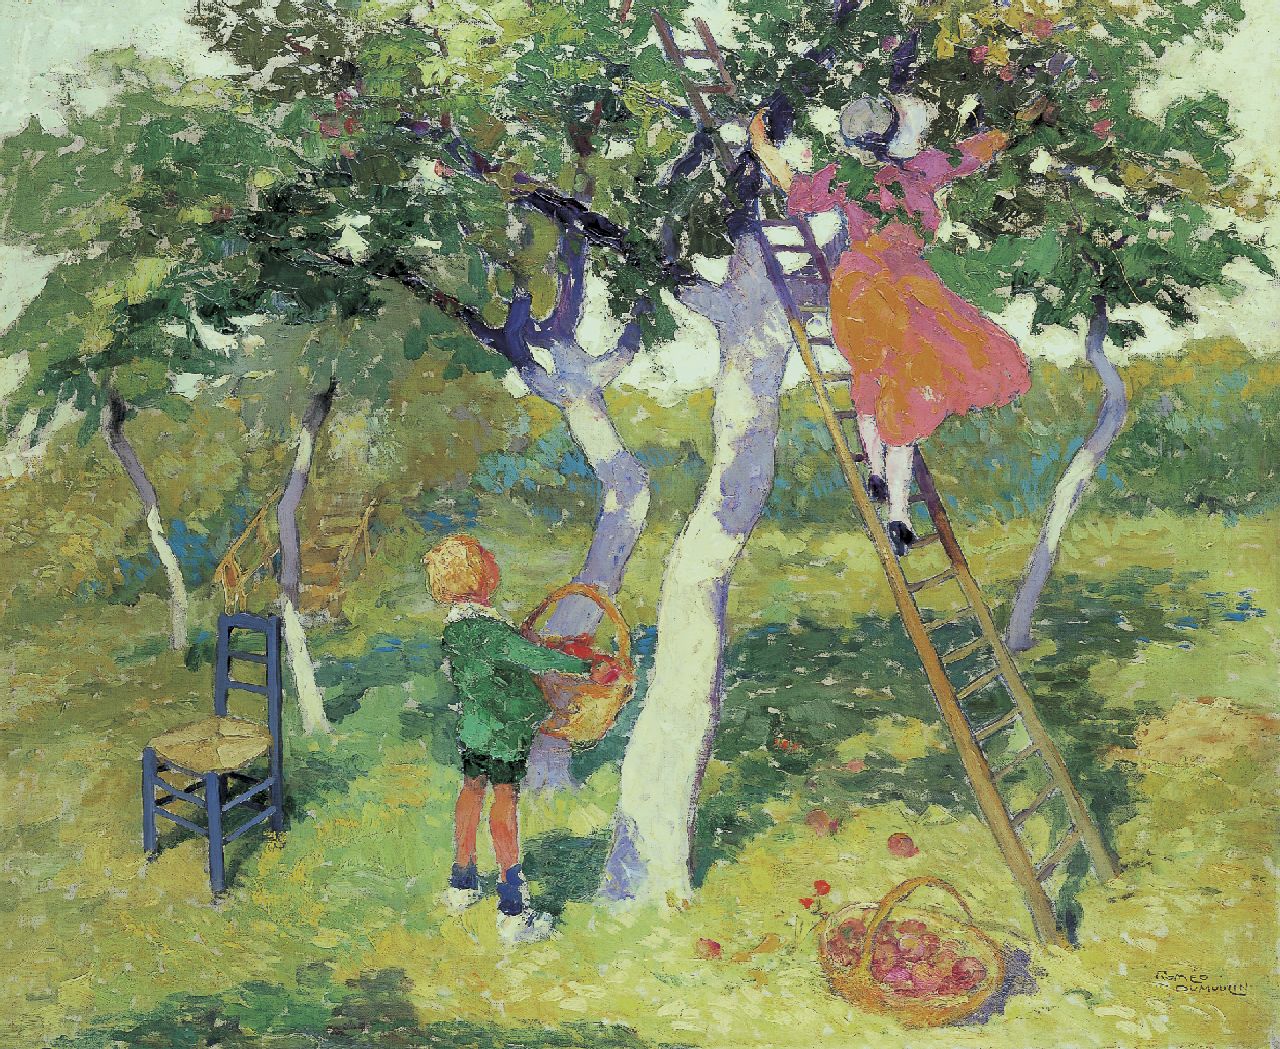 Dumoulin R.  | Roméo Dumoulin, Picking apples, Öl auf Leinwand 70,5 x 85,3 cm, signed l.r.